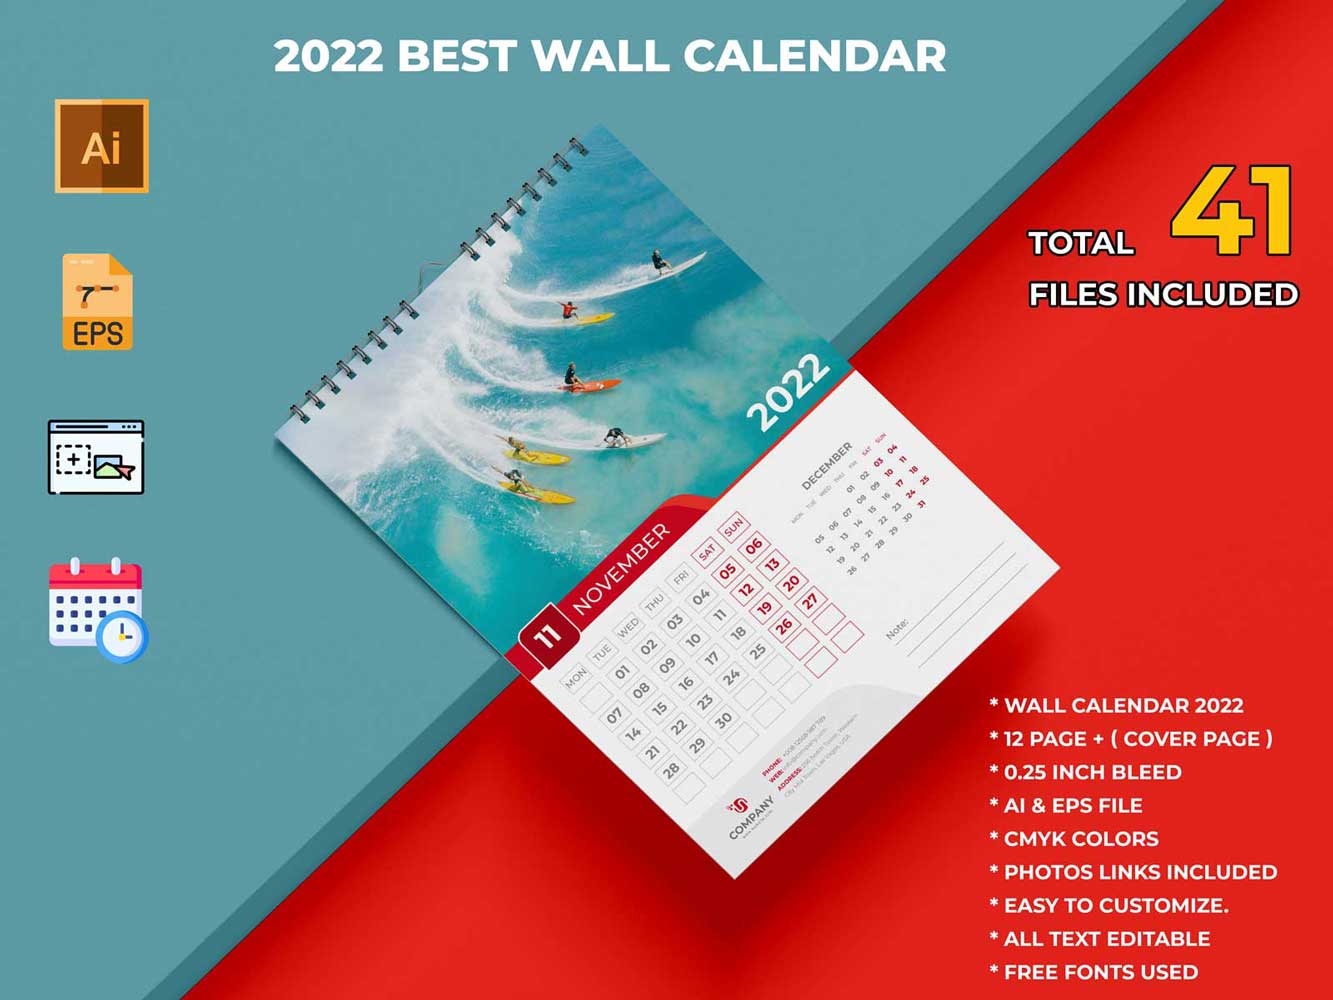 Best Wall Calendar 2022 - Corporate Business Calendar Template